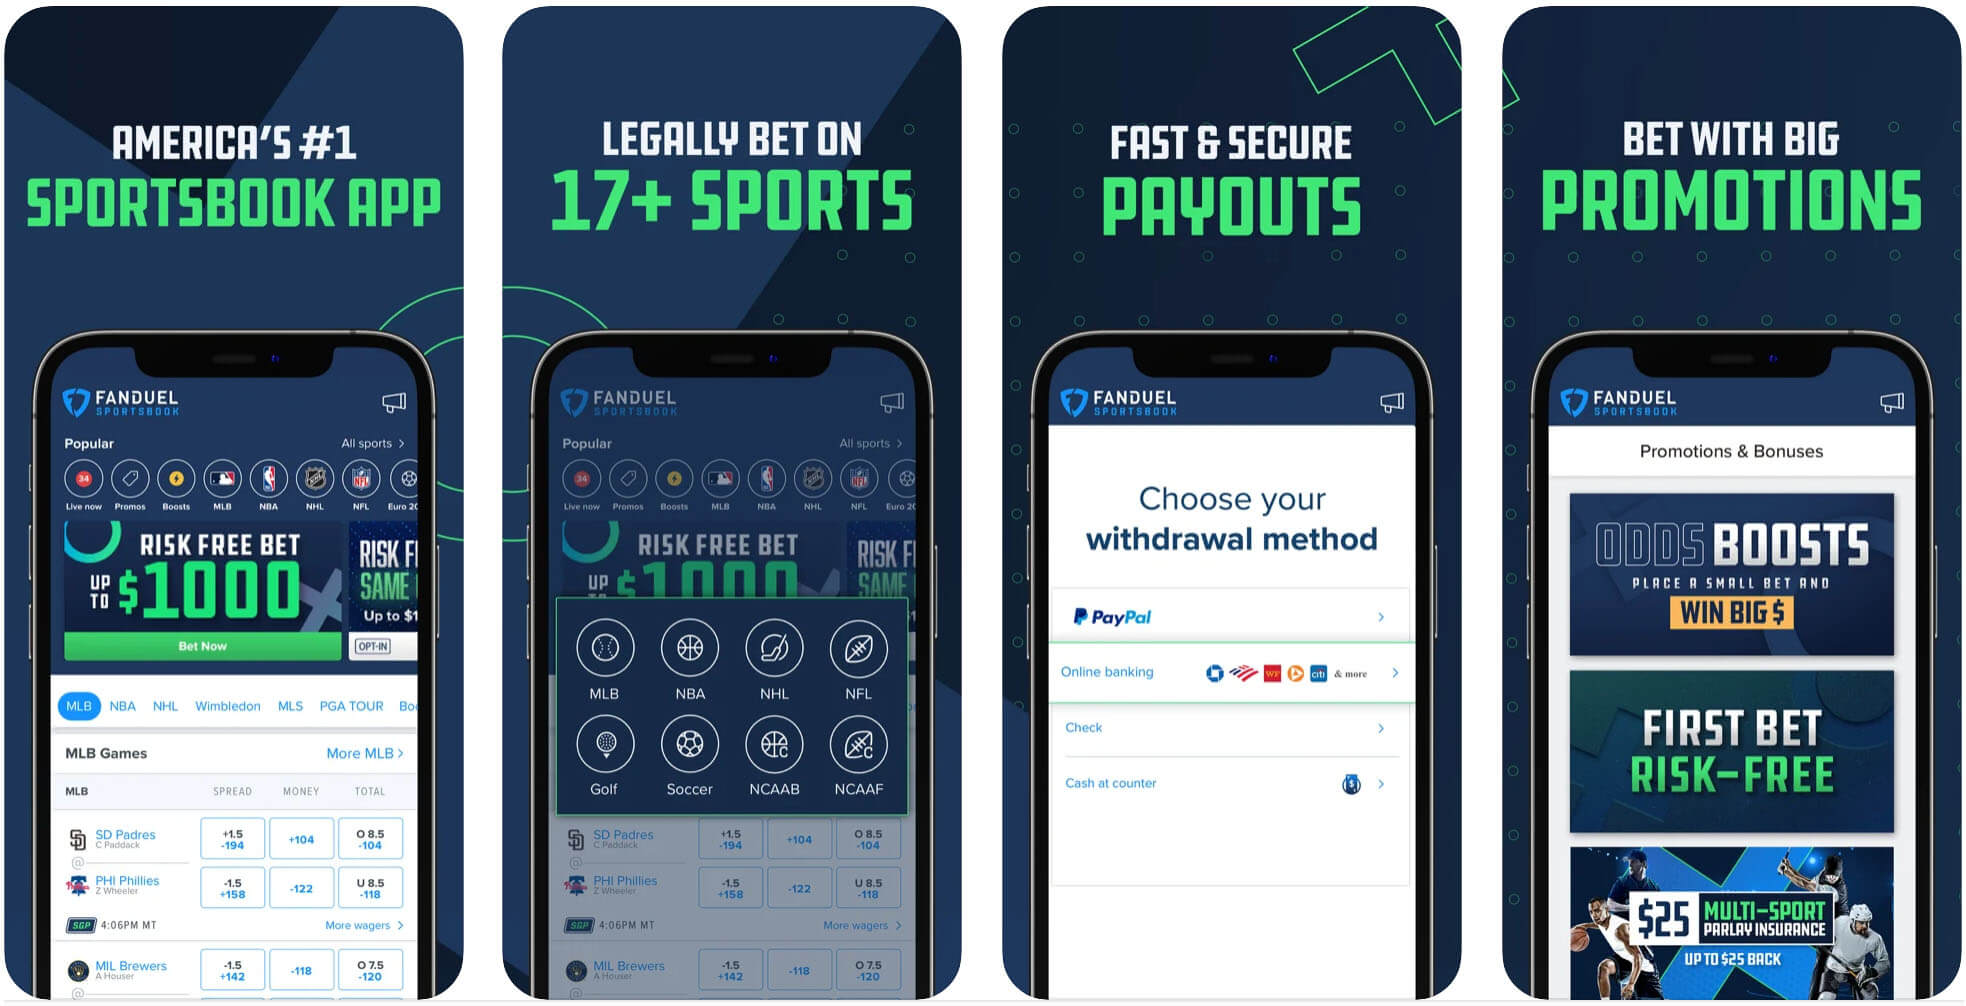 FanDuel Sportsbook NY Mobile App, App Store (iPhone)